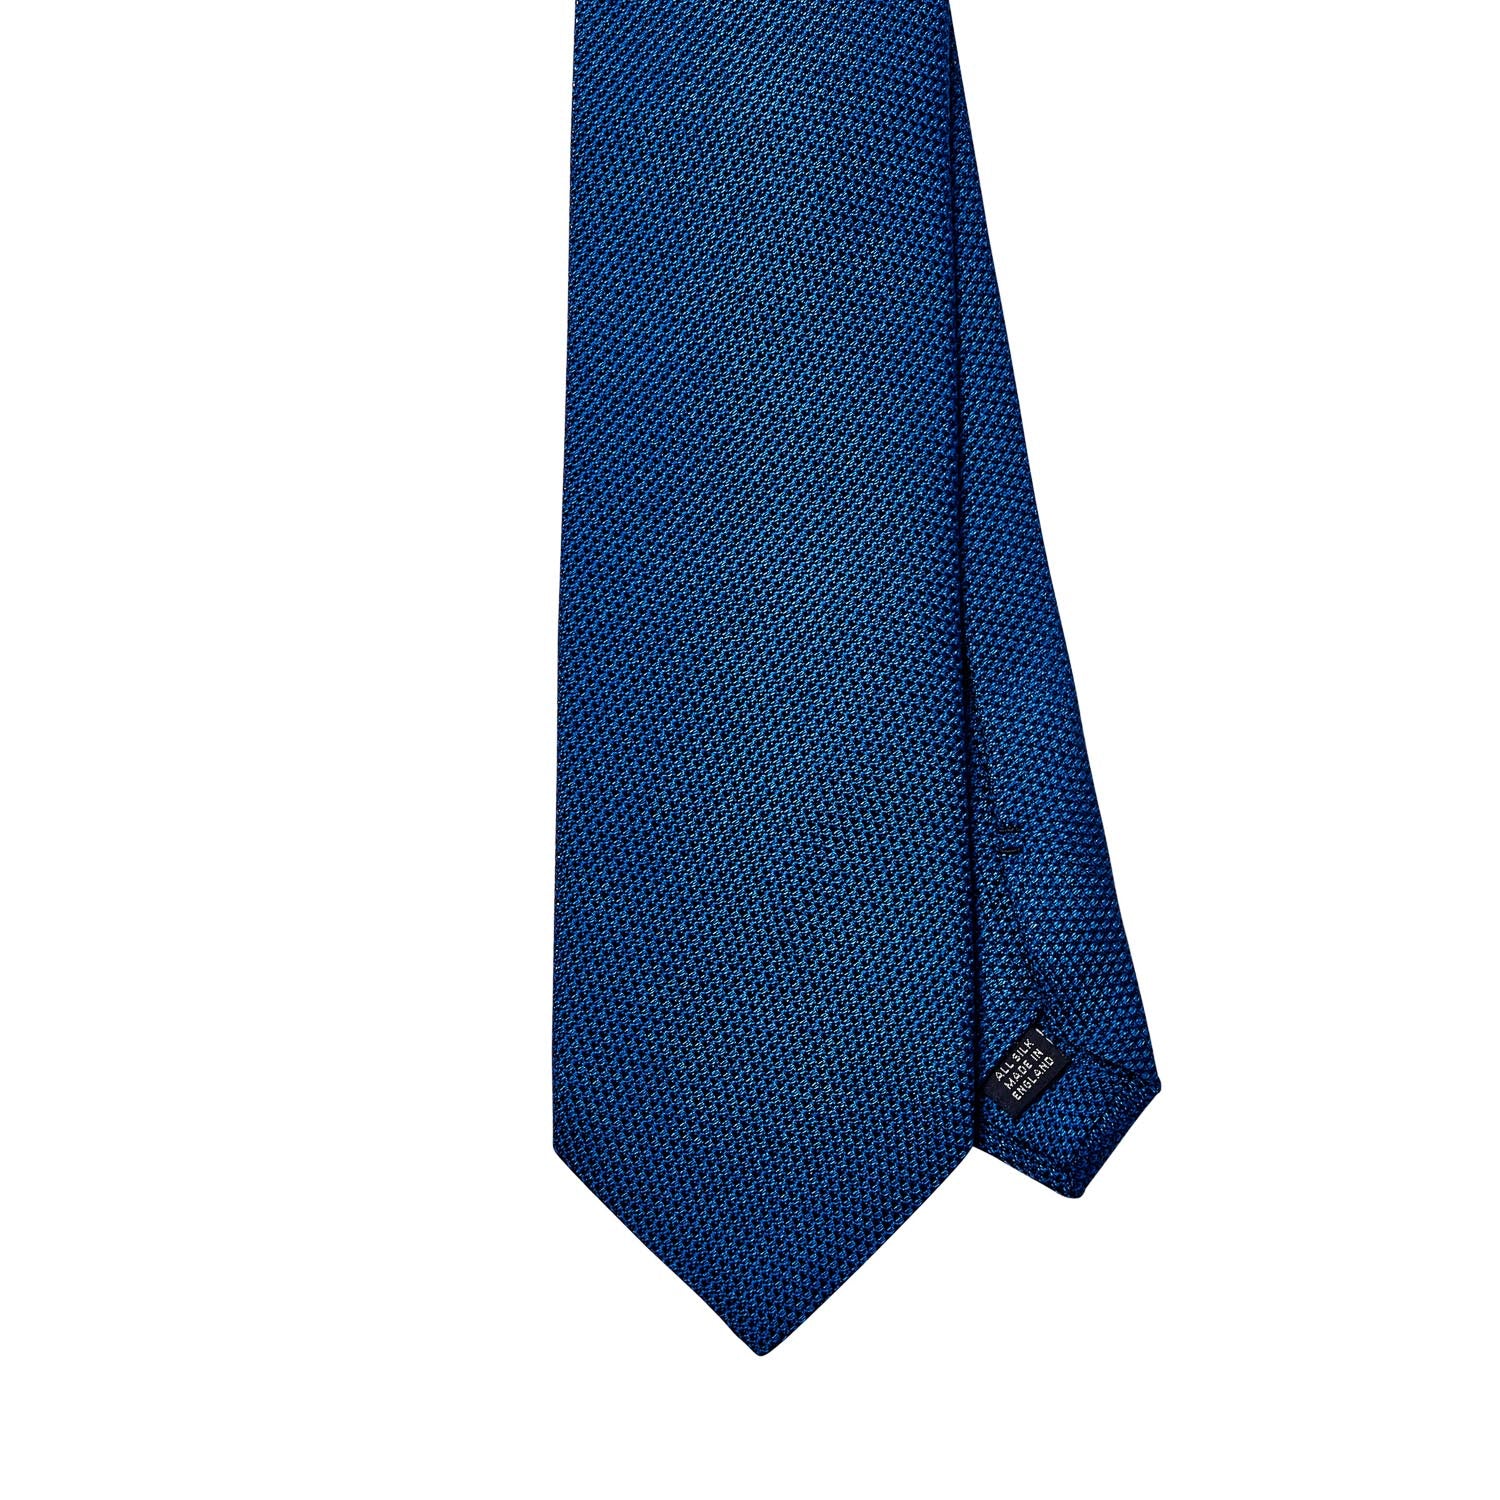 Sovereign Grade Grenadine Fina Bright Blue Tie | KirbyAllison.com